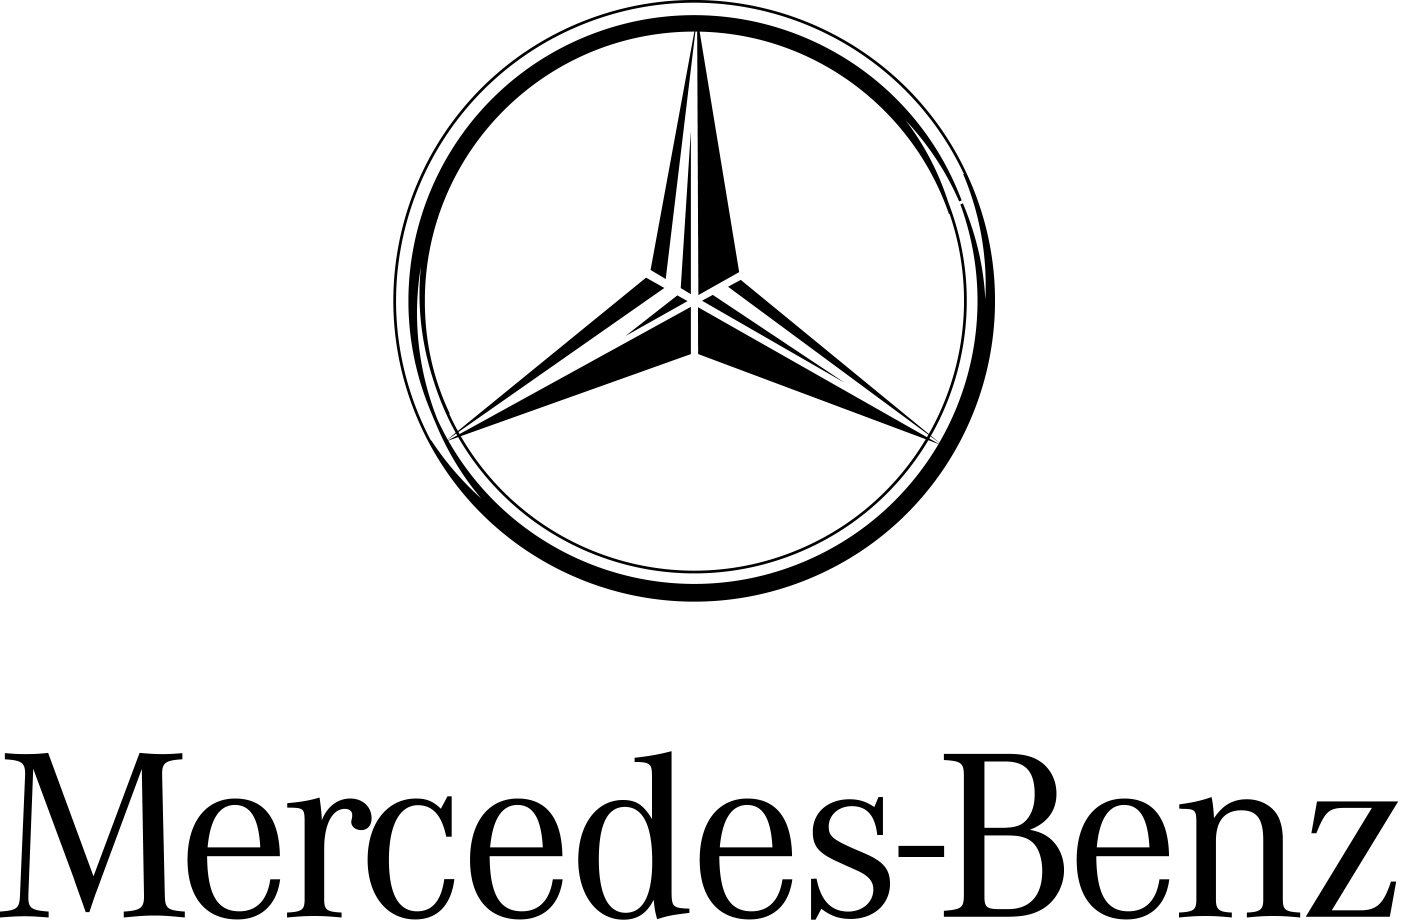 Húsz százalékos növekedést ért el a Mercedes-Benz kecskeméti gyára